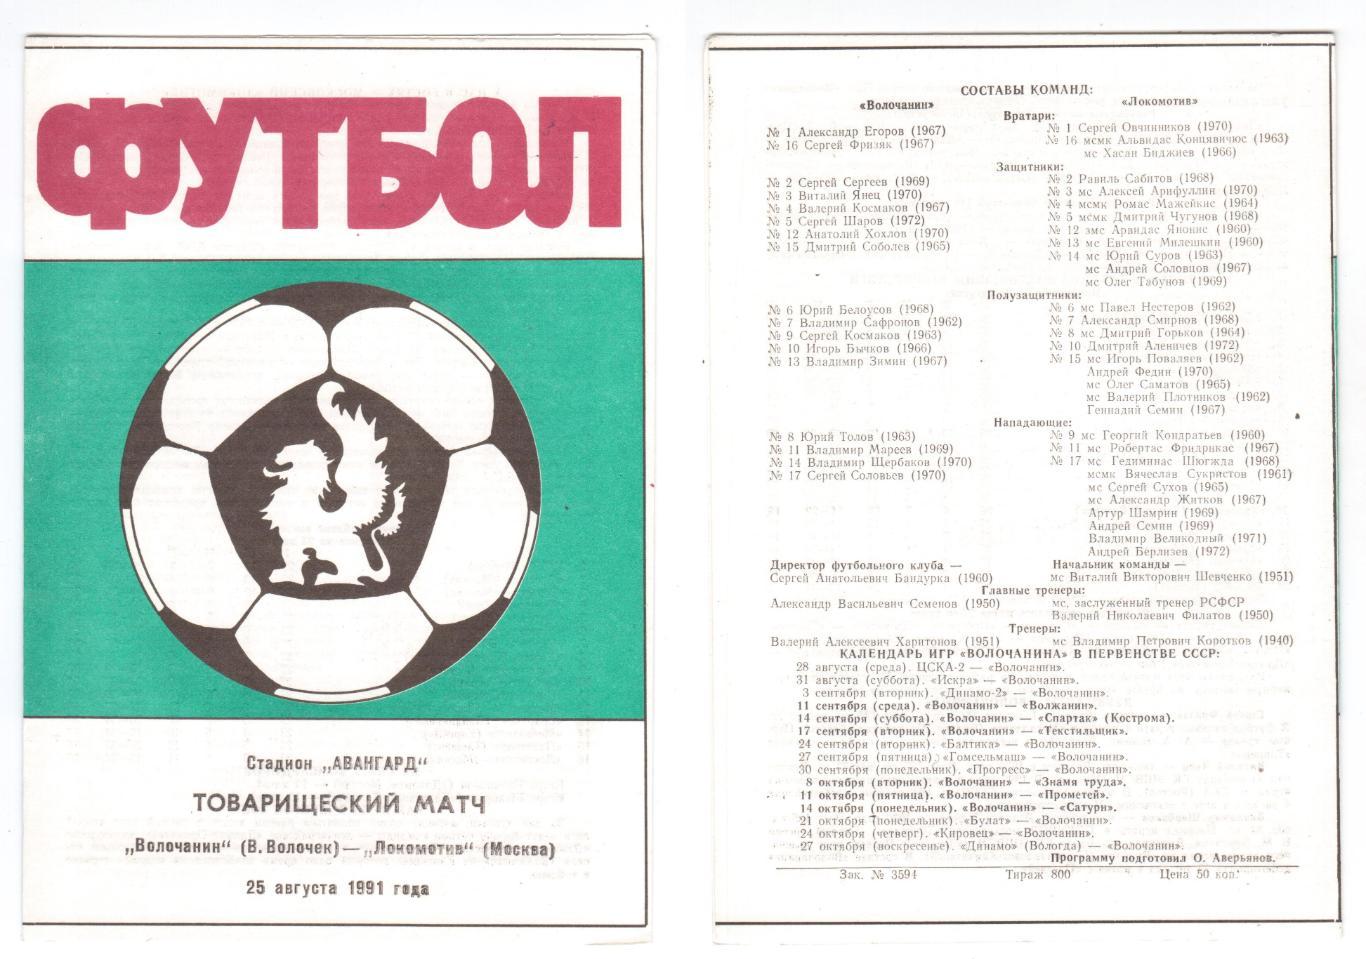 Программка 1991 Волочанин (Вышний Волочек) - Локомотив (Москва), 25.08.1991, ТМ